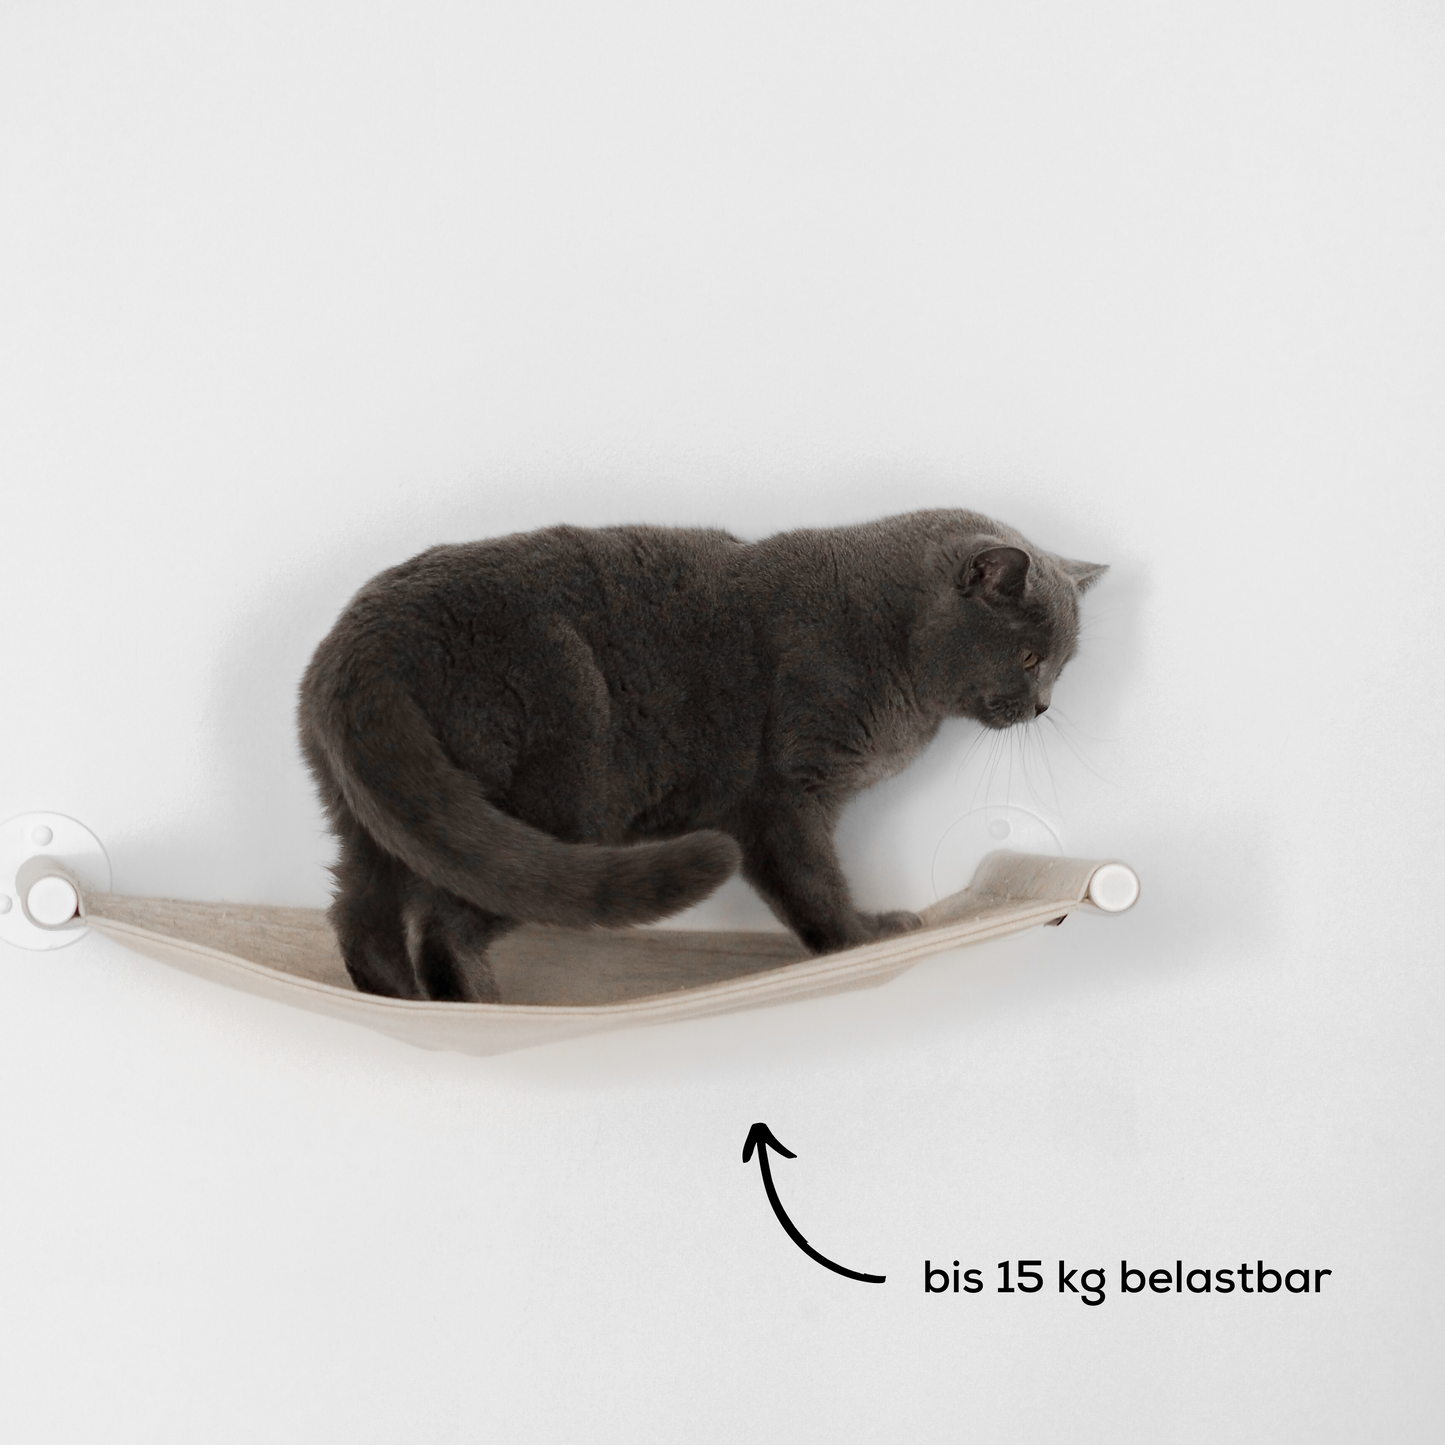 Katze steht auf einer modernen Hängematte für Katzen, welche an der Wand hängt.